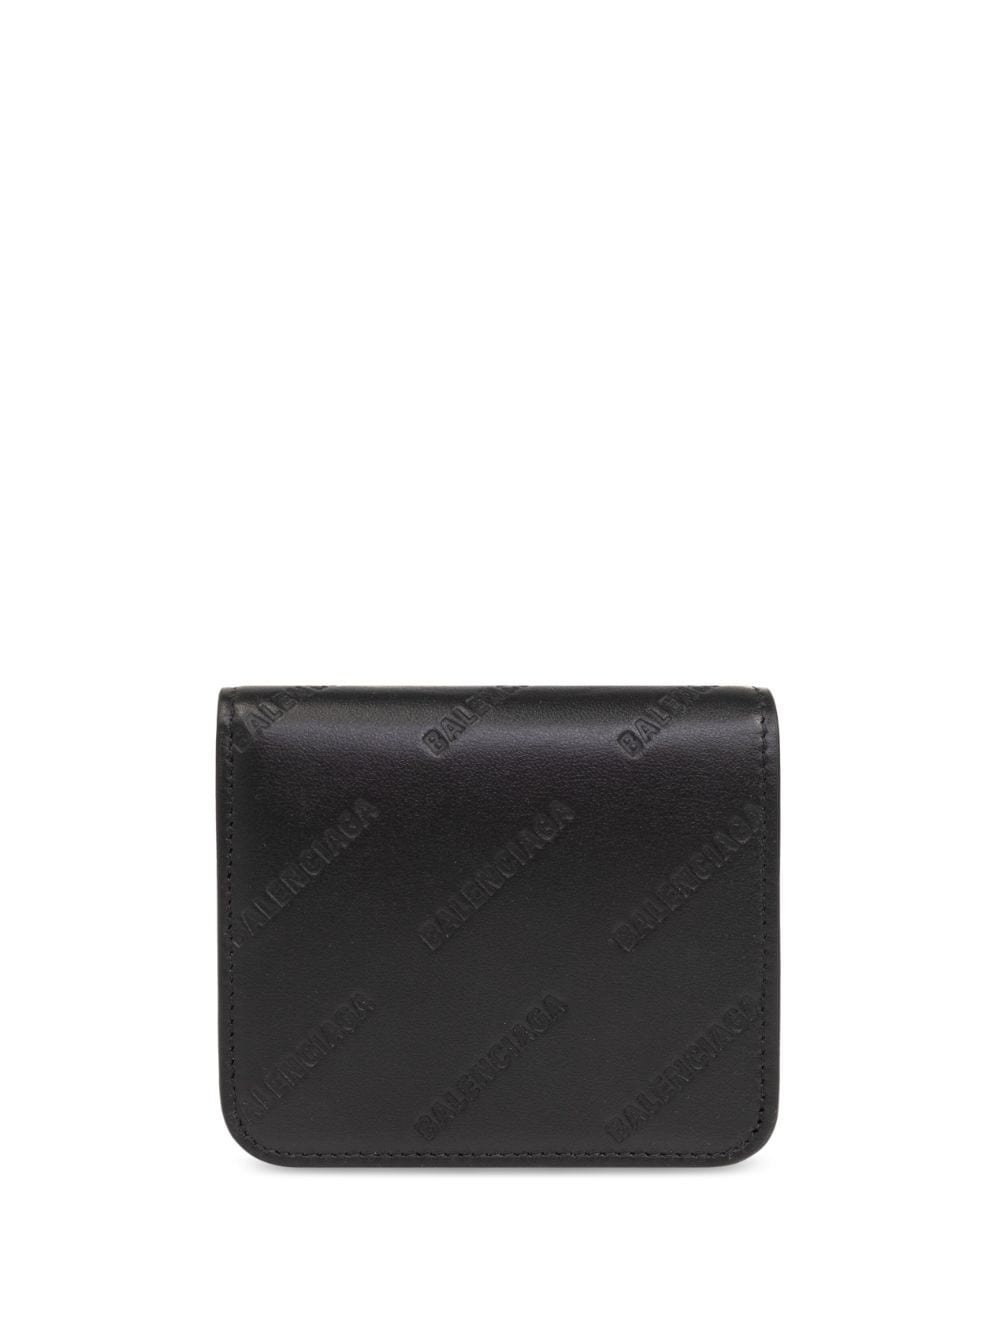 logo-debossed leather wallet - 1